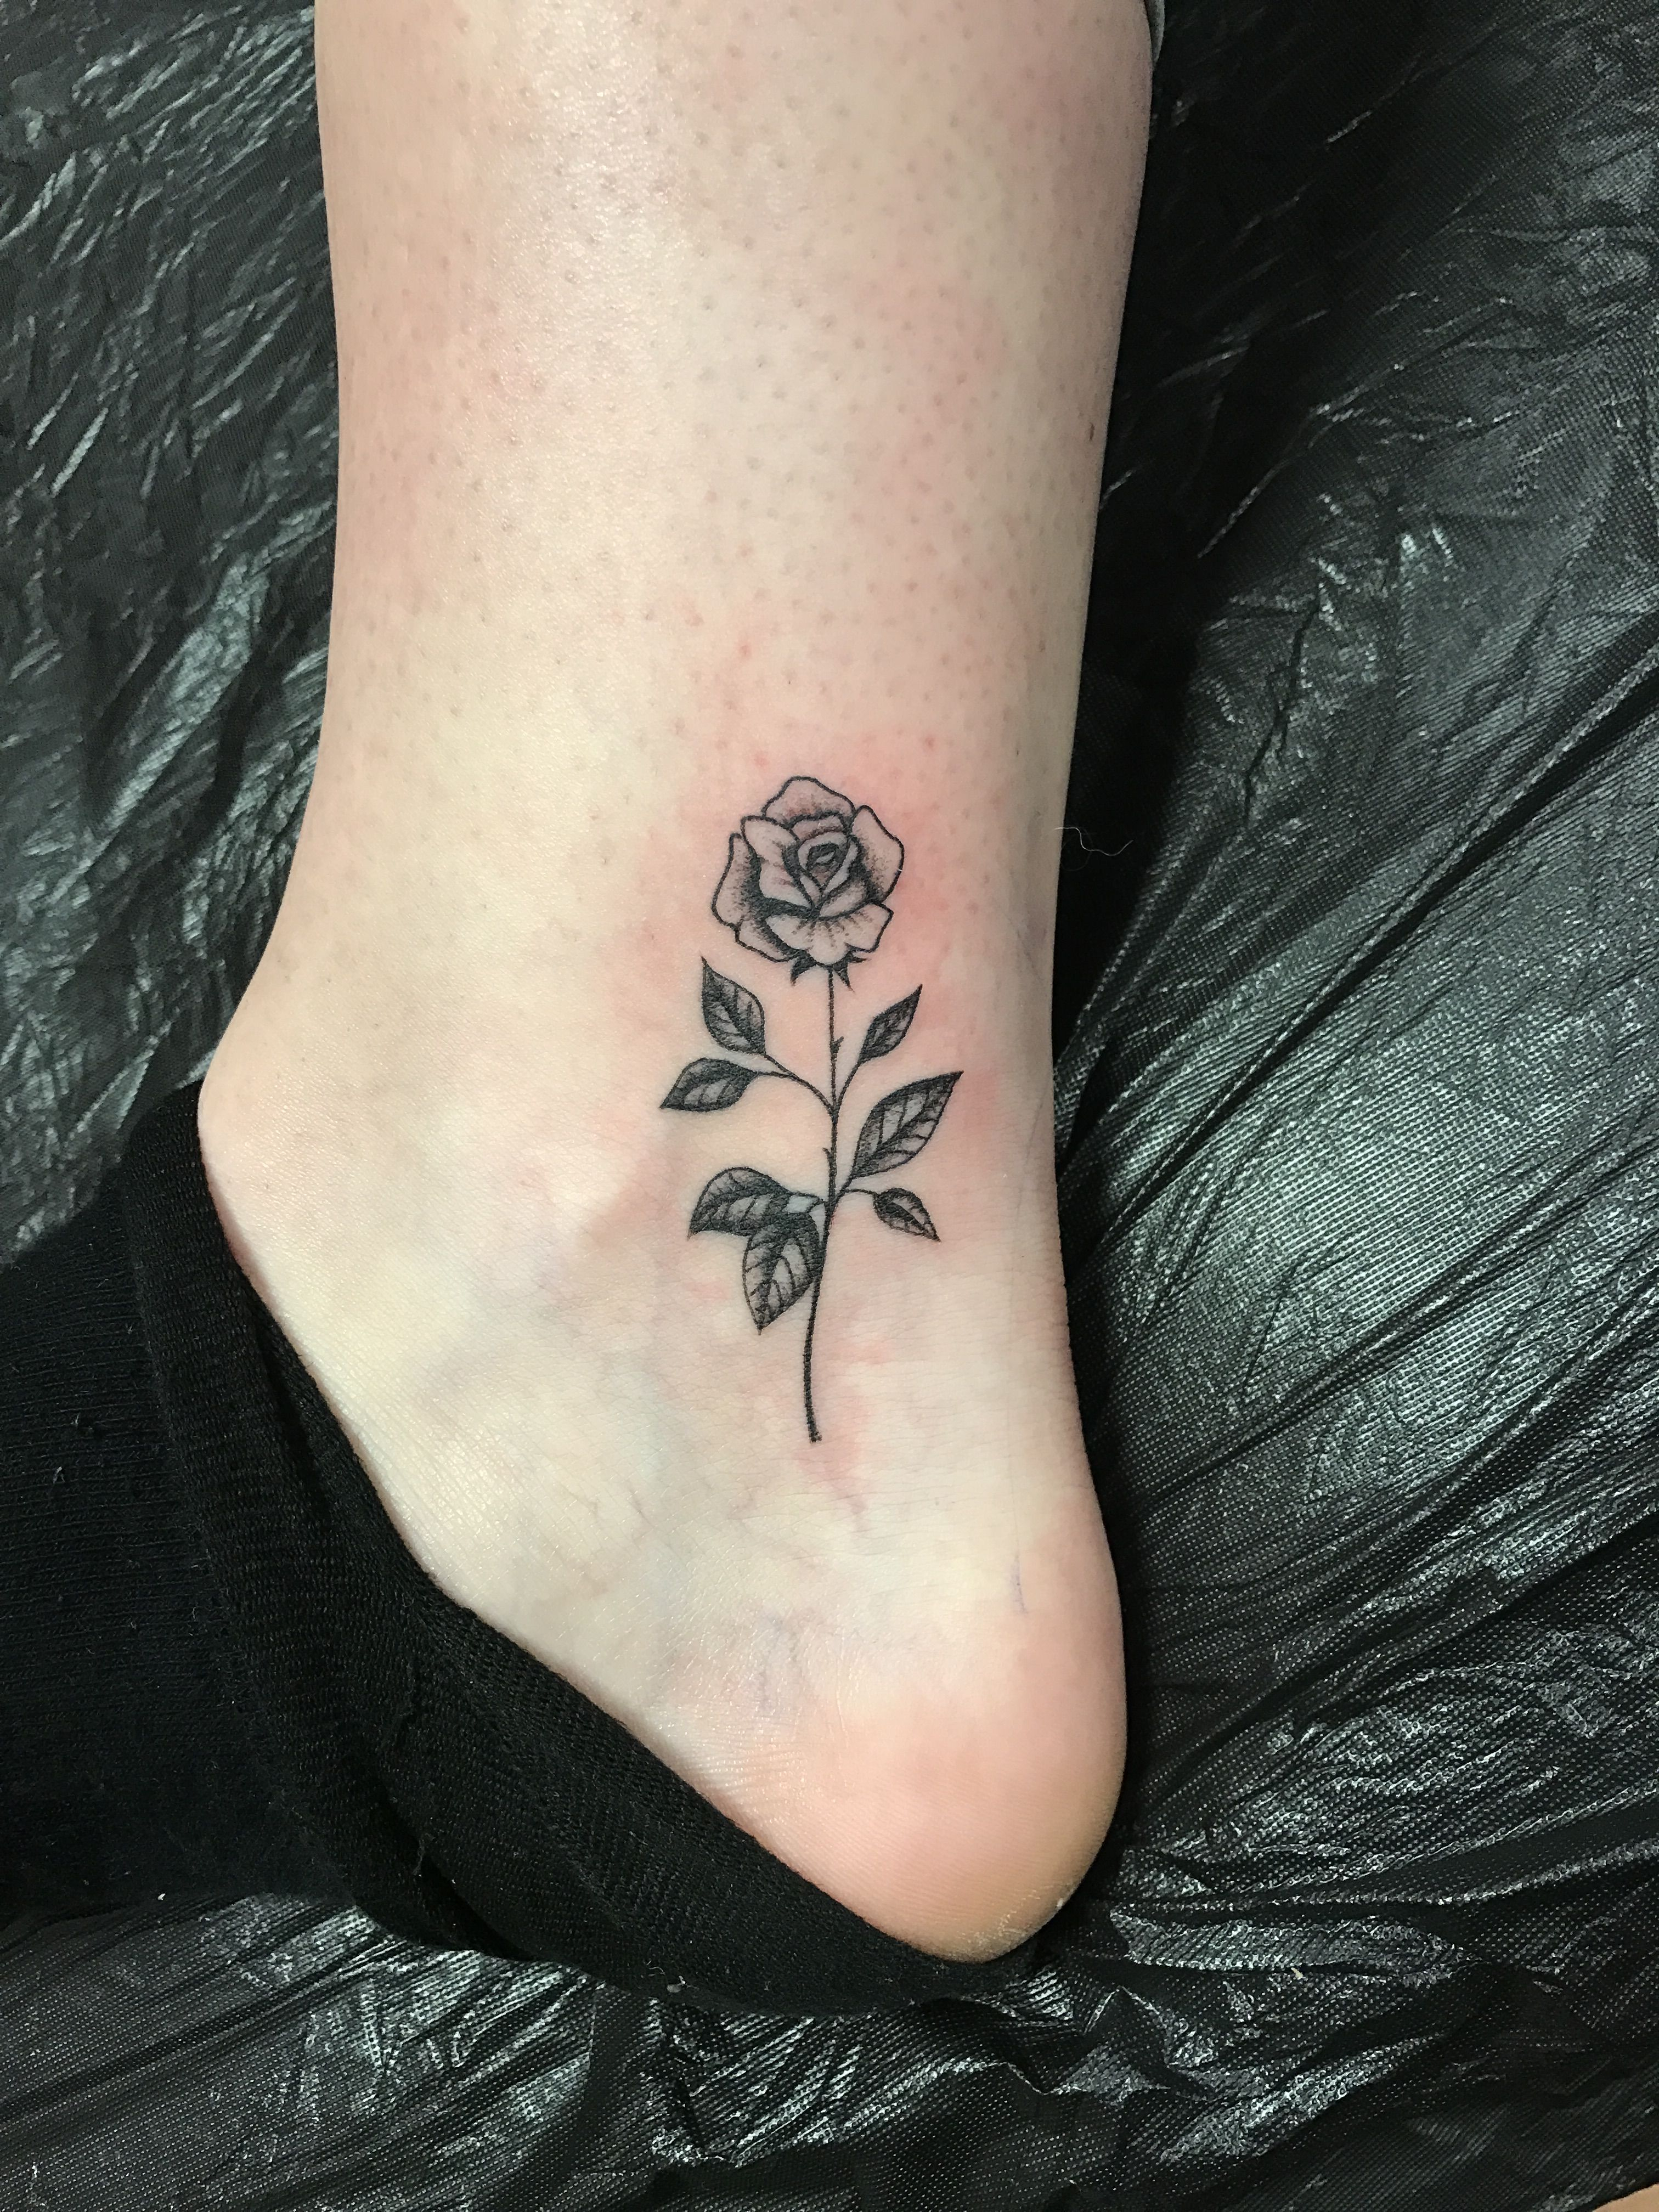 Small Rose Tattoo Tats Galore Tattoos Rose Tattoos Shoulder Tattoo in size 3024 X 4032